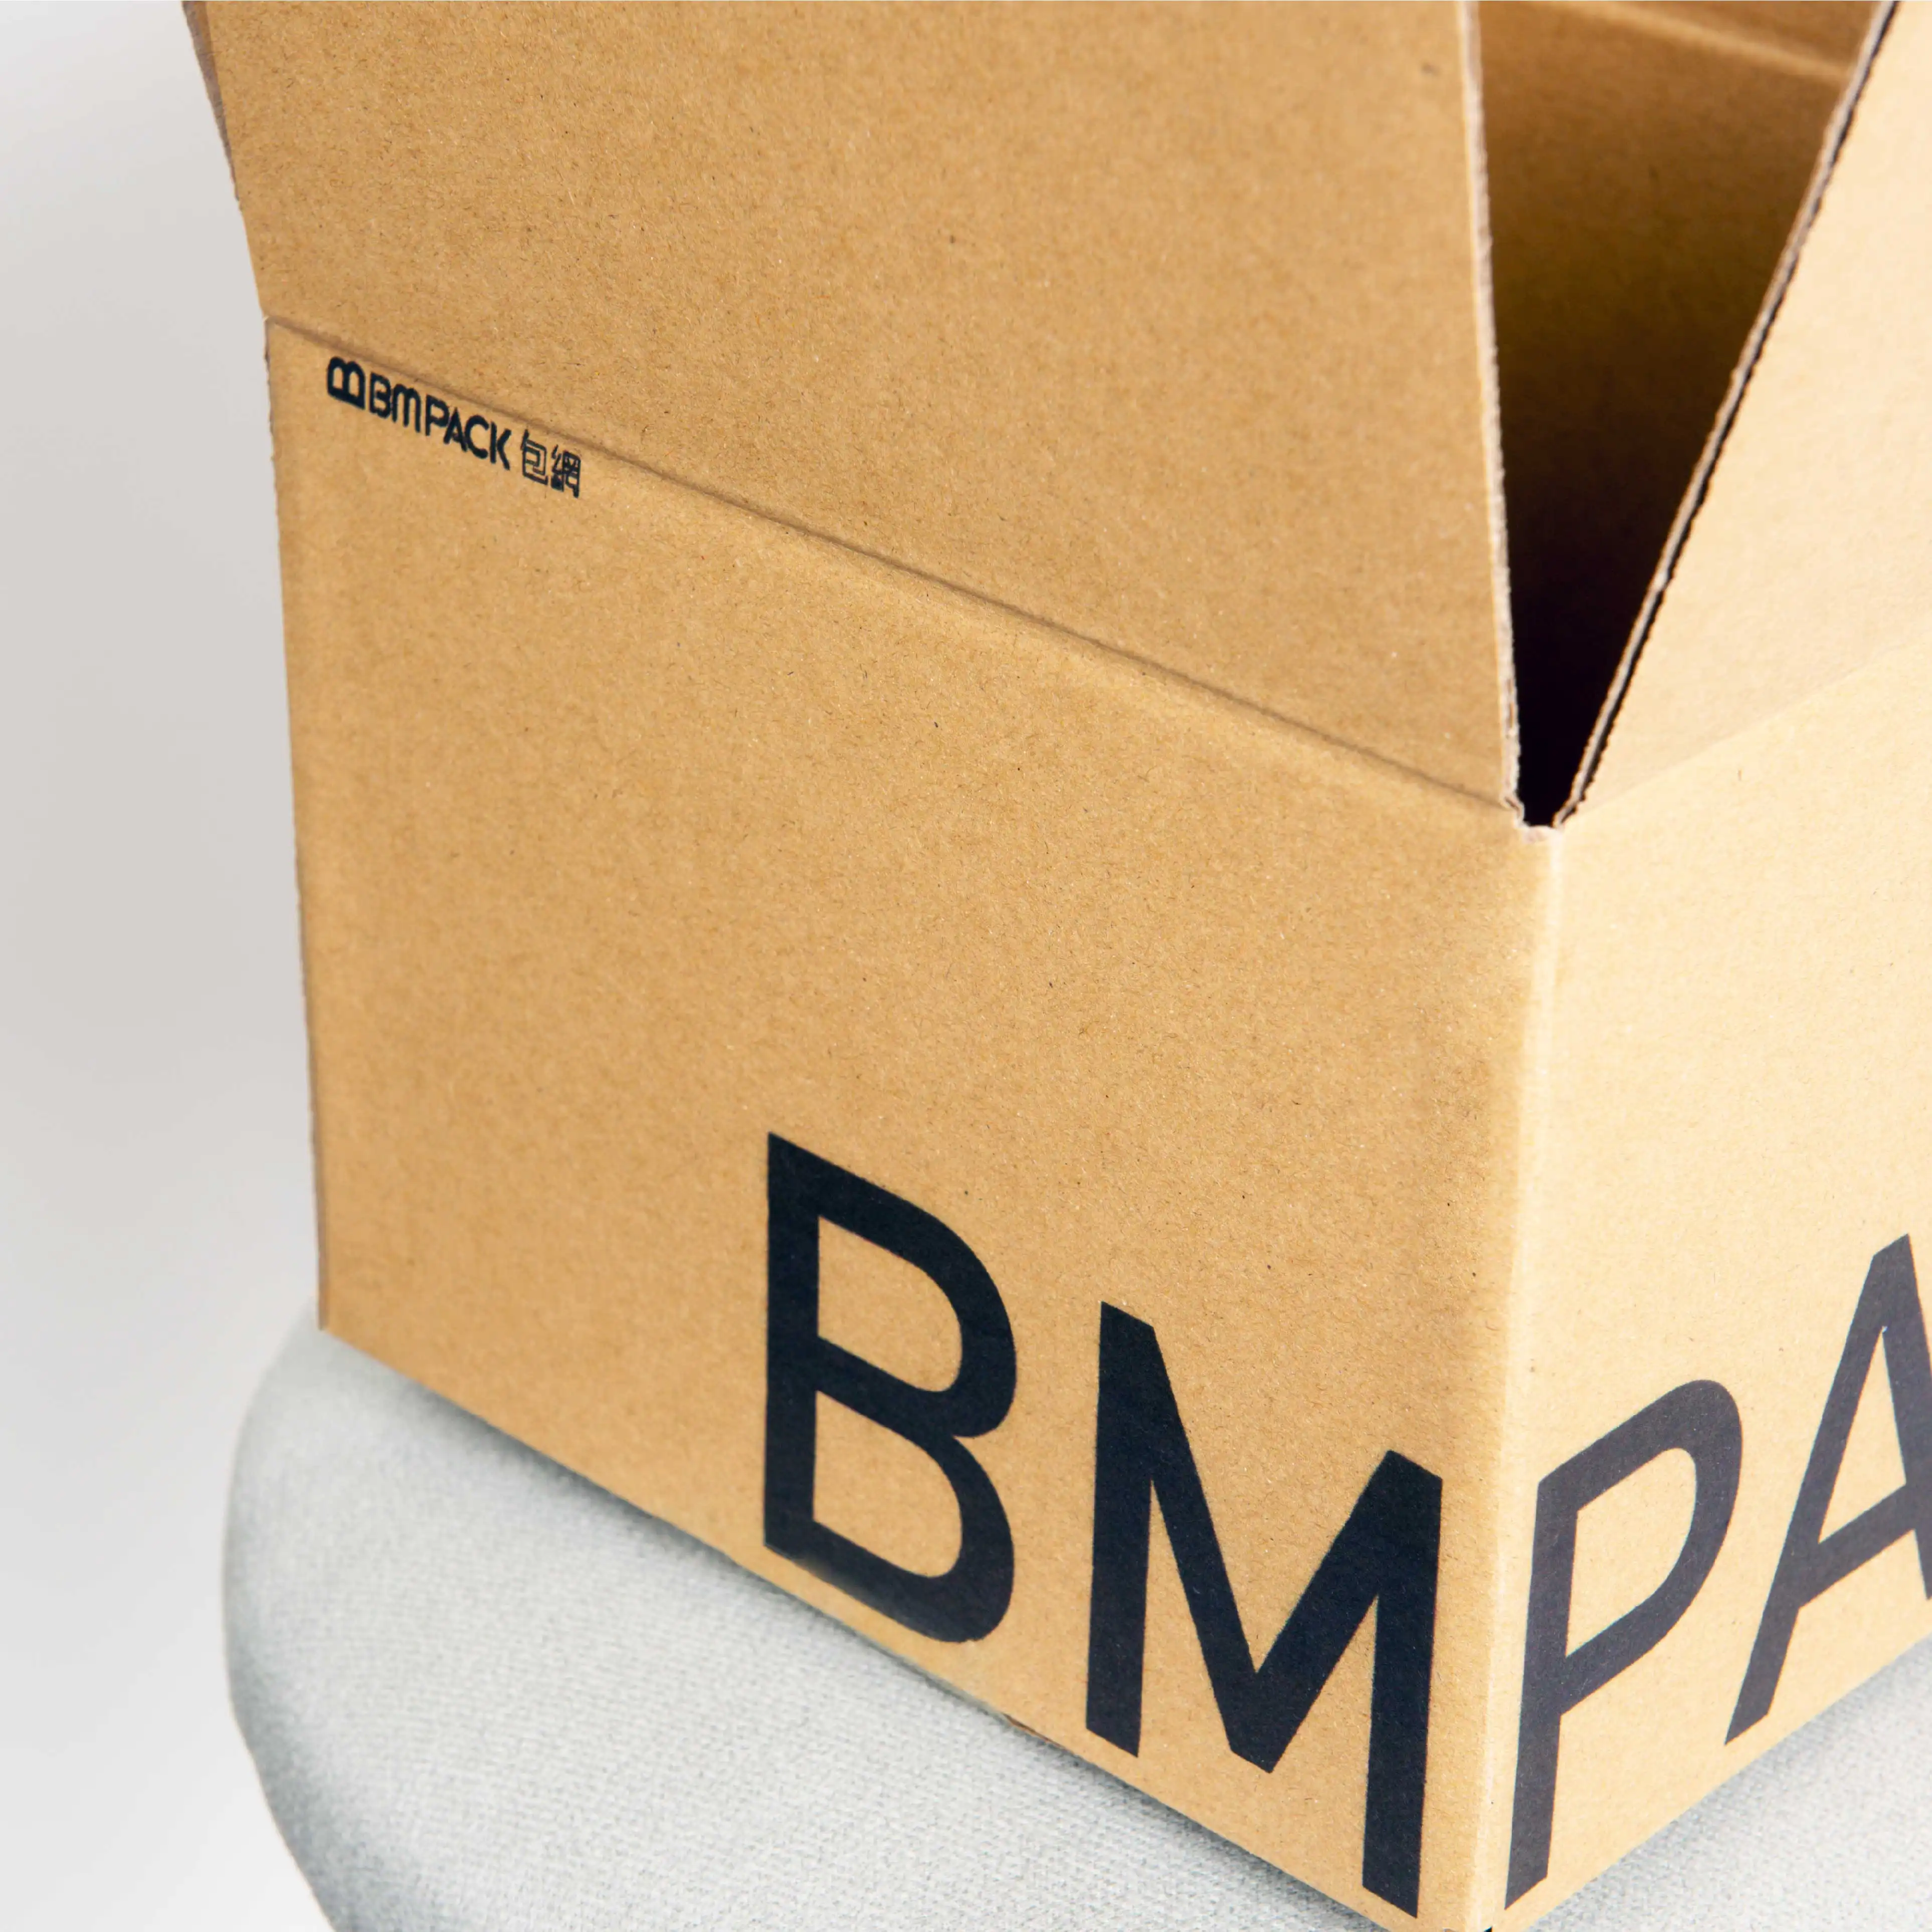 BM PACK 包網提供大規模訂紙箱生產服務